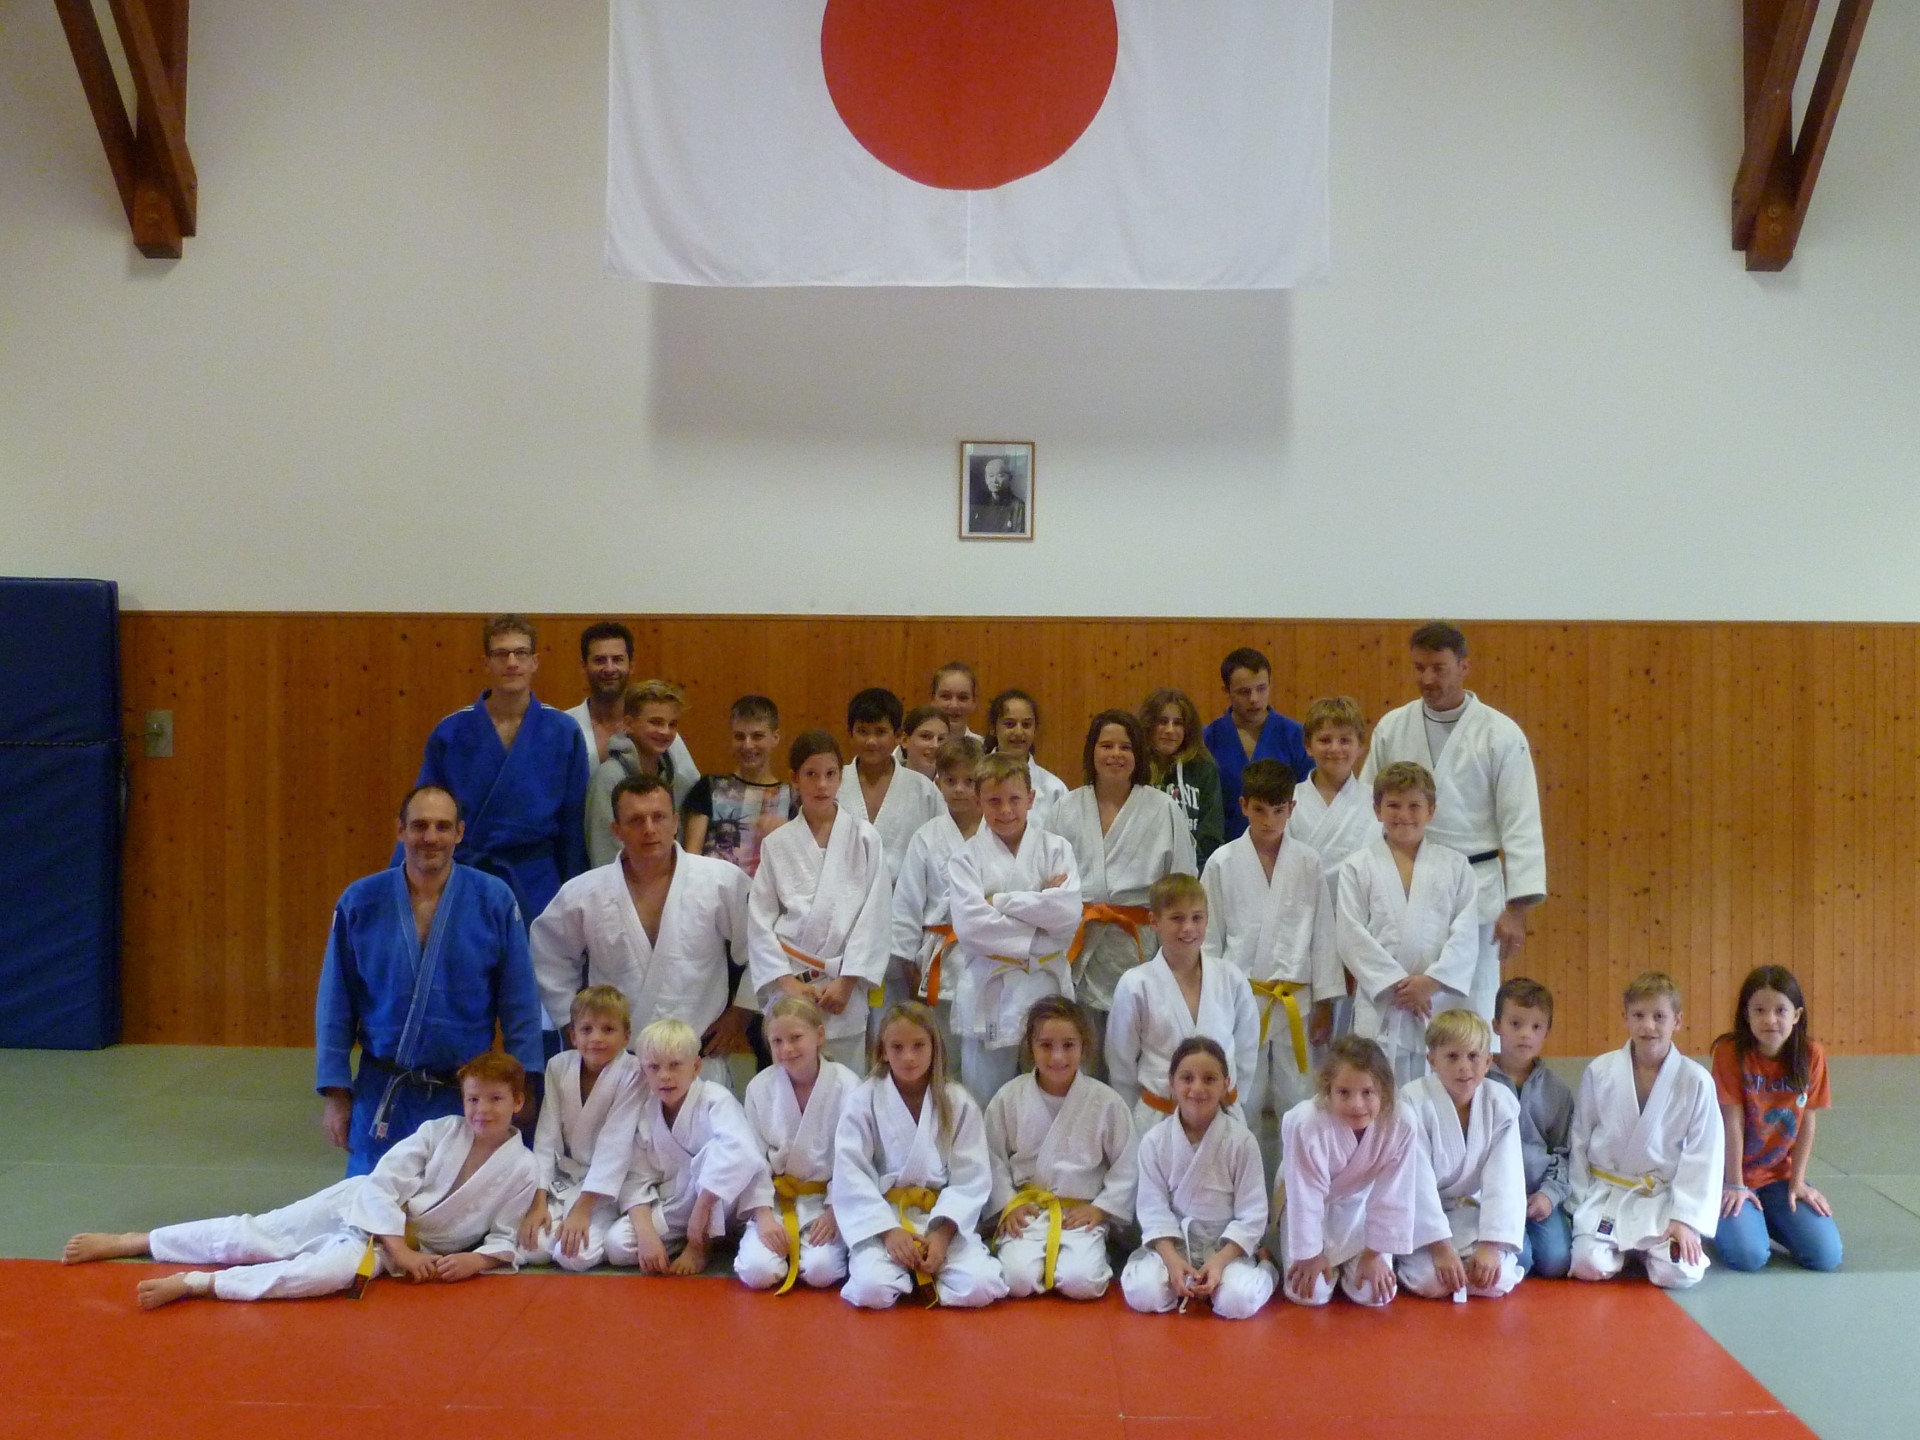 Teilnehmende Judokas am Trainingswochenende beim Abschlusstraining am Sonntagvormittag im Dojo Schaffhausen.